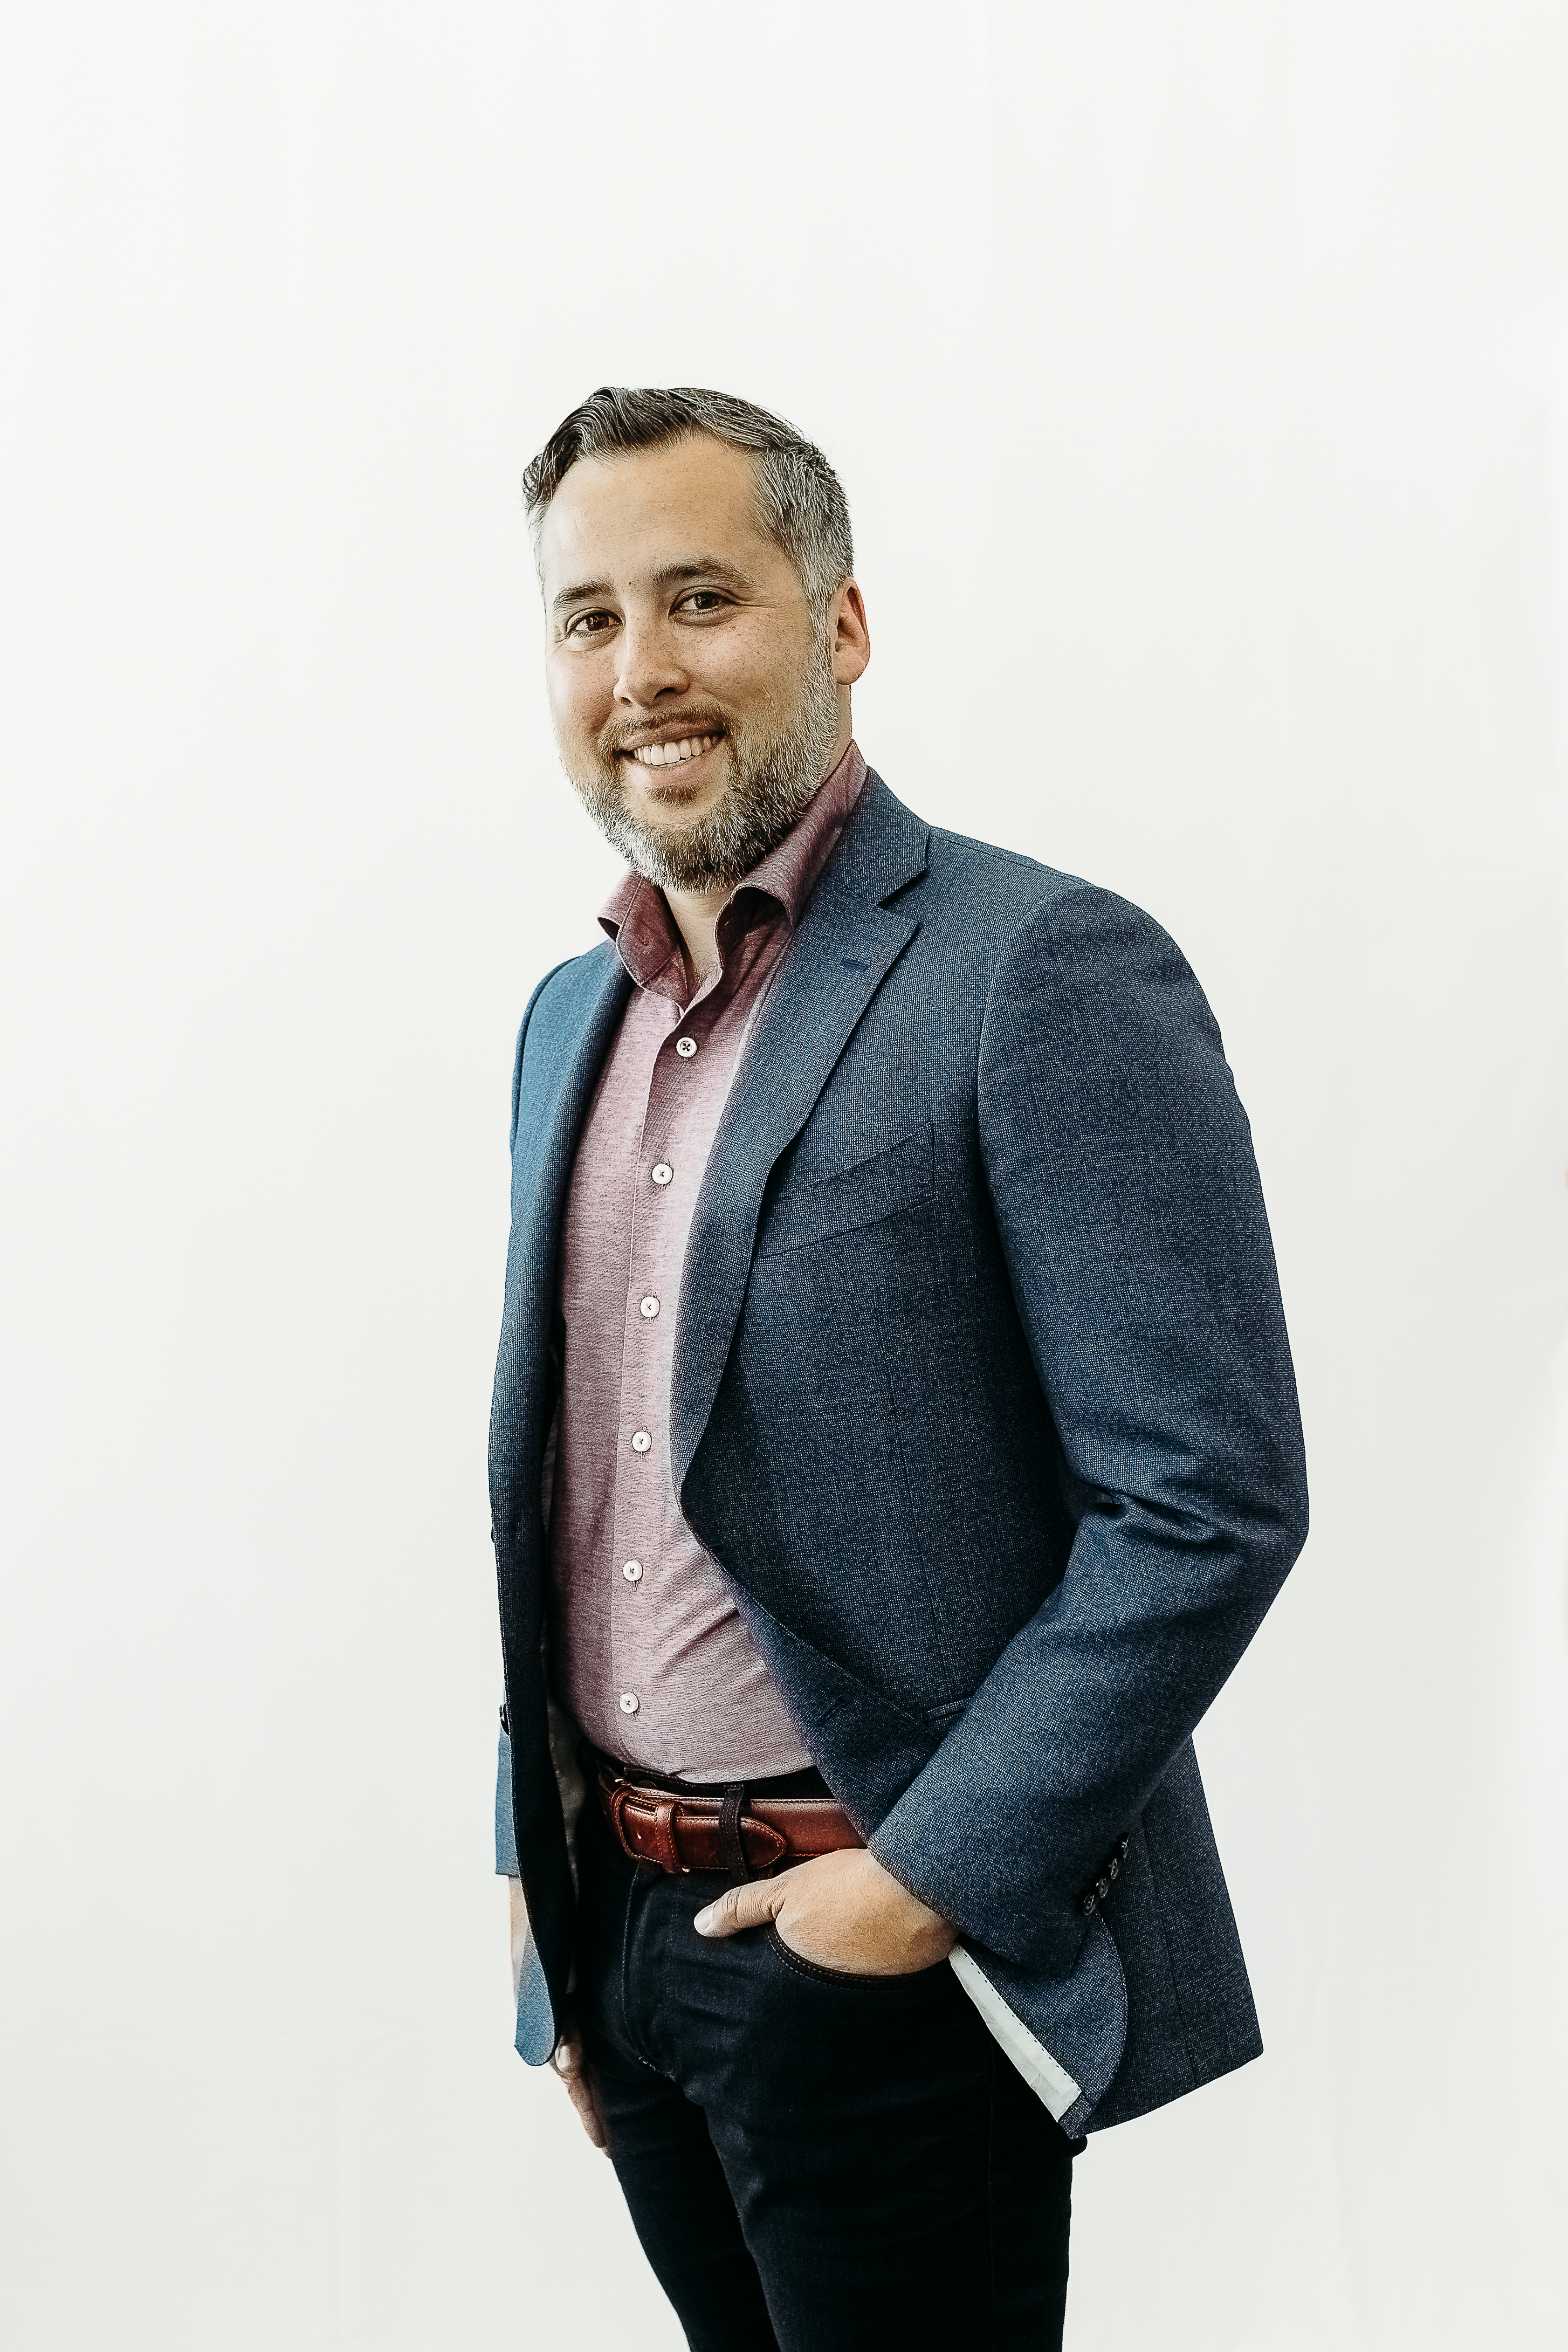 Ben Hernandez, CEO of Numat